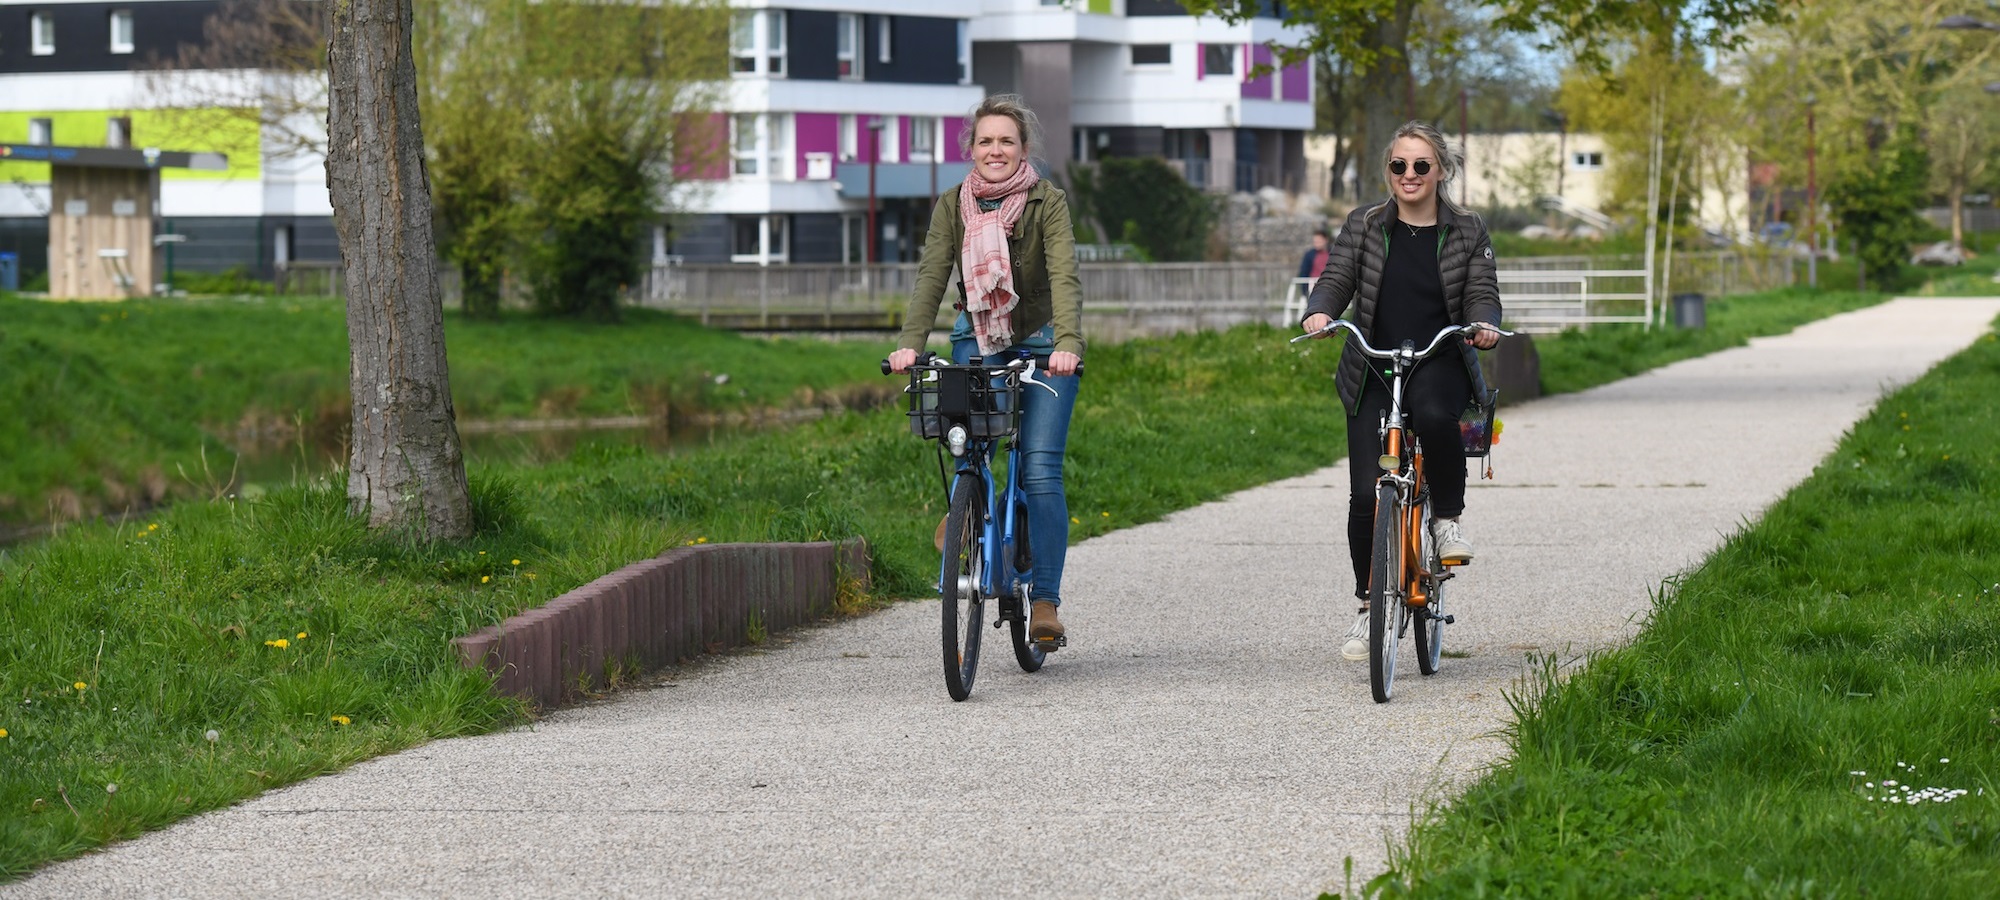 photo de deux jeunes femmes circulant sur une piste cyclable aménagée entre verdure et immeubles récents